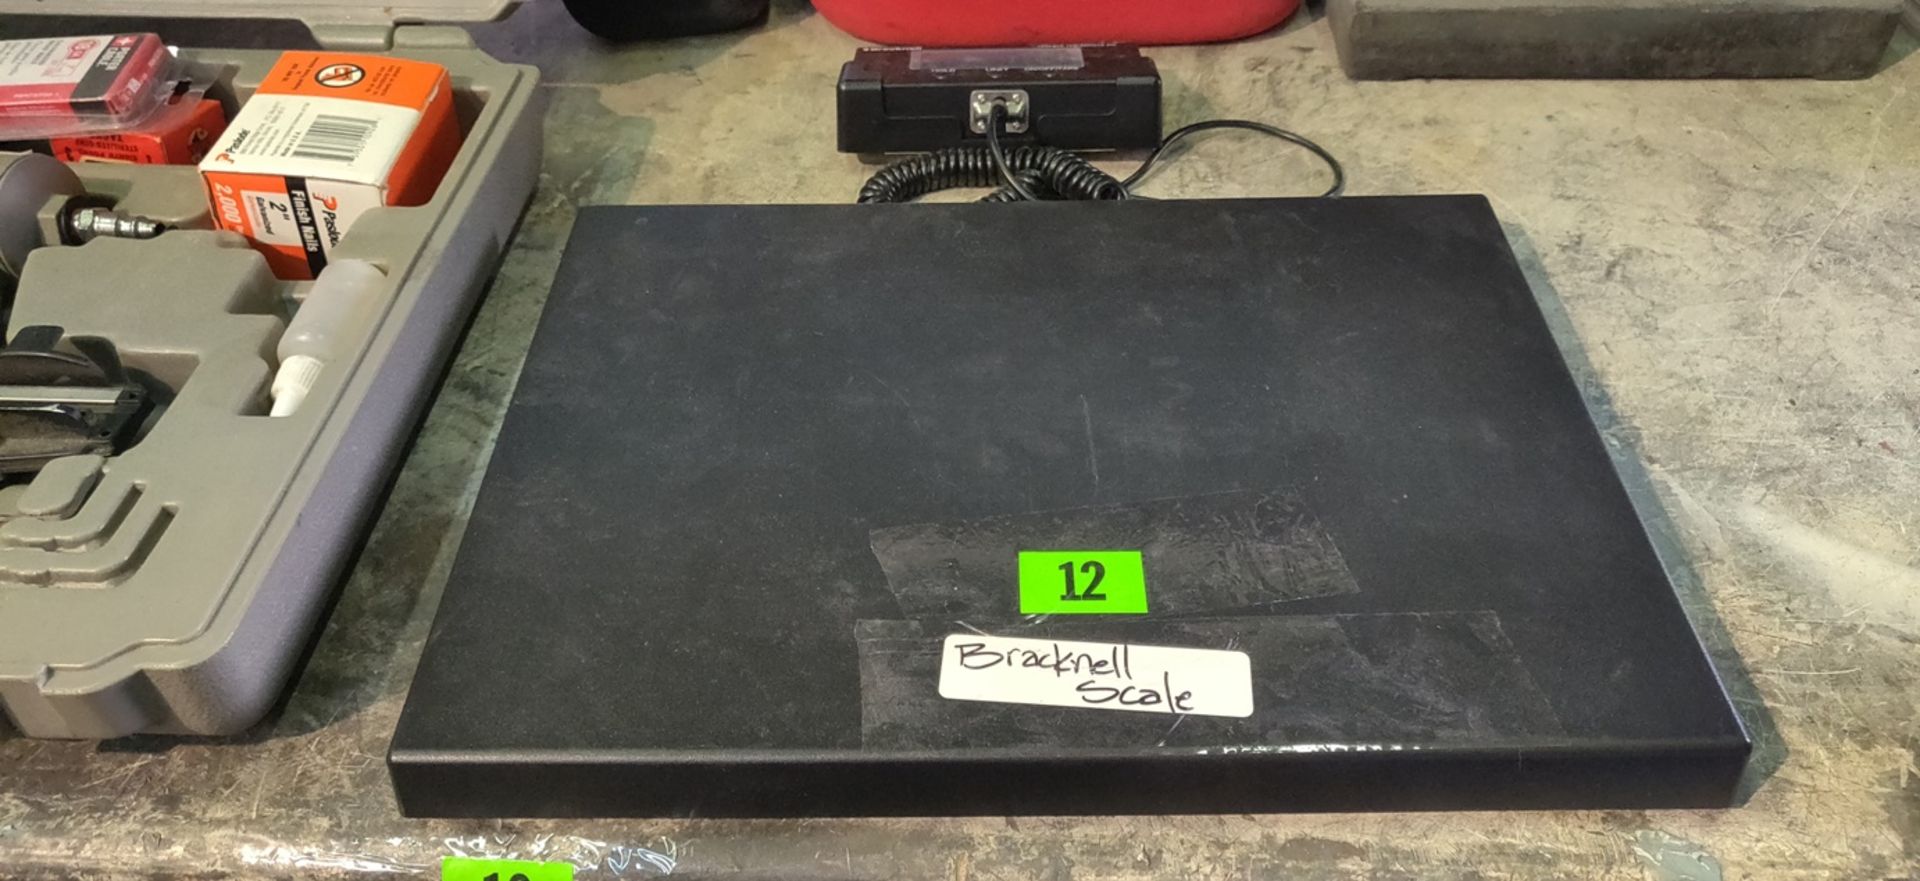 BRACKNELL SCALE MODEL# BPS400 - Image 2 of 3